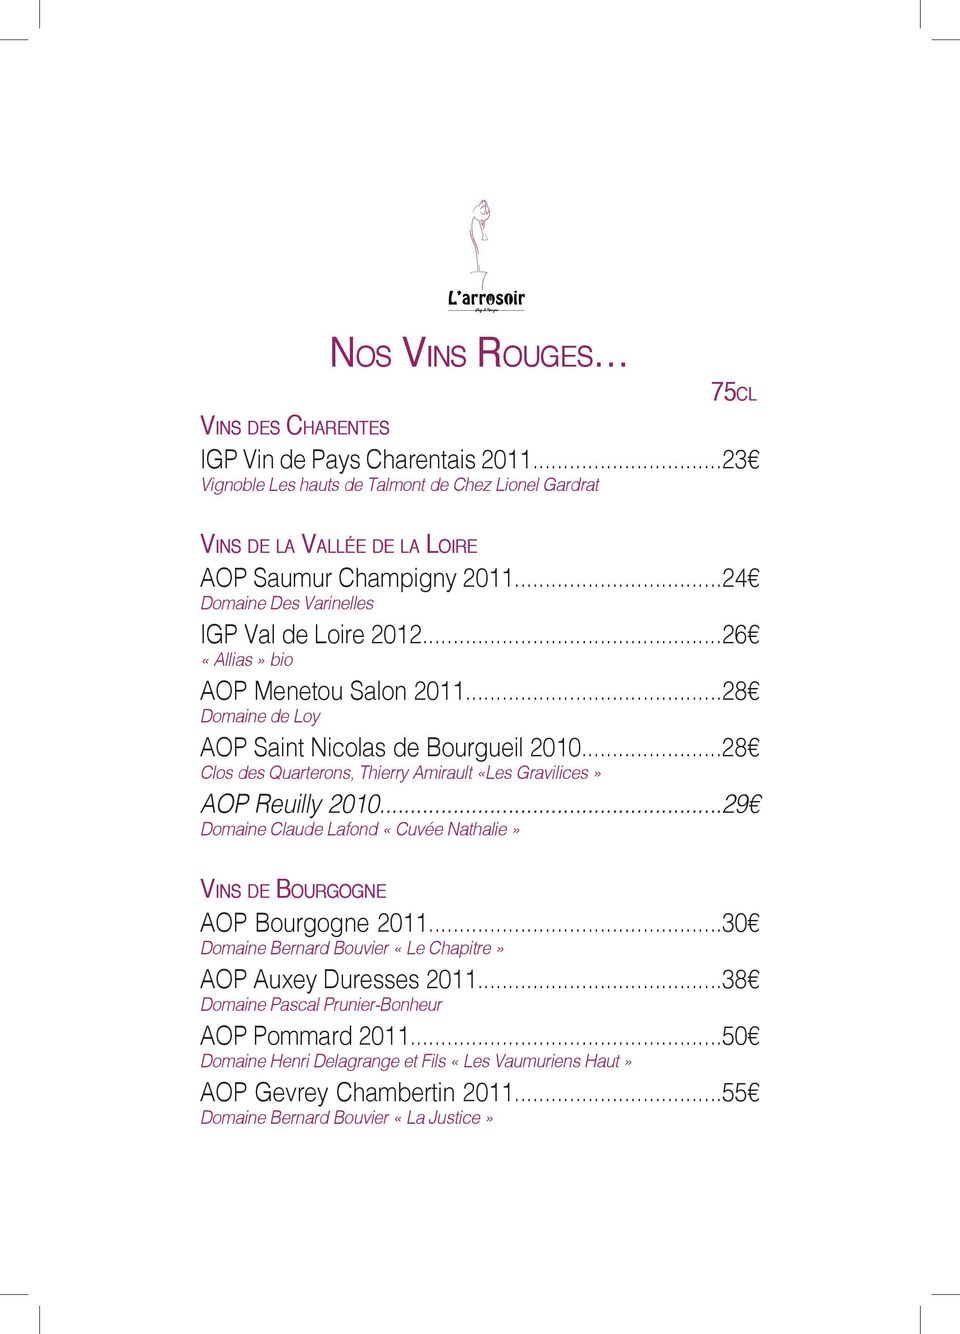 ..28 Clos des Quarterons, Thierry Amirault «Les Gravilices» AOP Reuilly 2010...29 Domaine Claude Lafond «Cuvée Nathalie» Vins de Bourgogne AOP Bourgogne 2011.